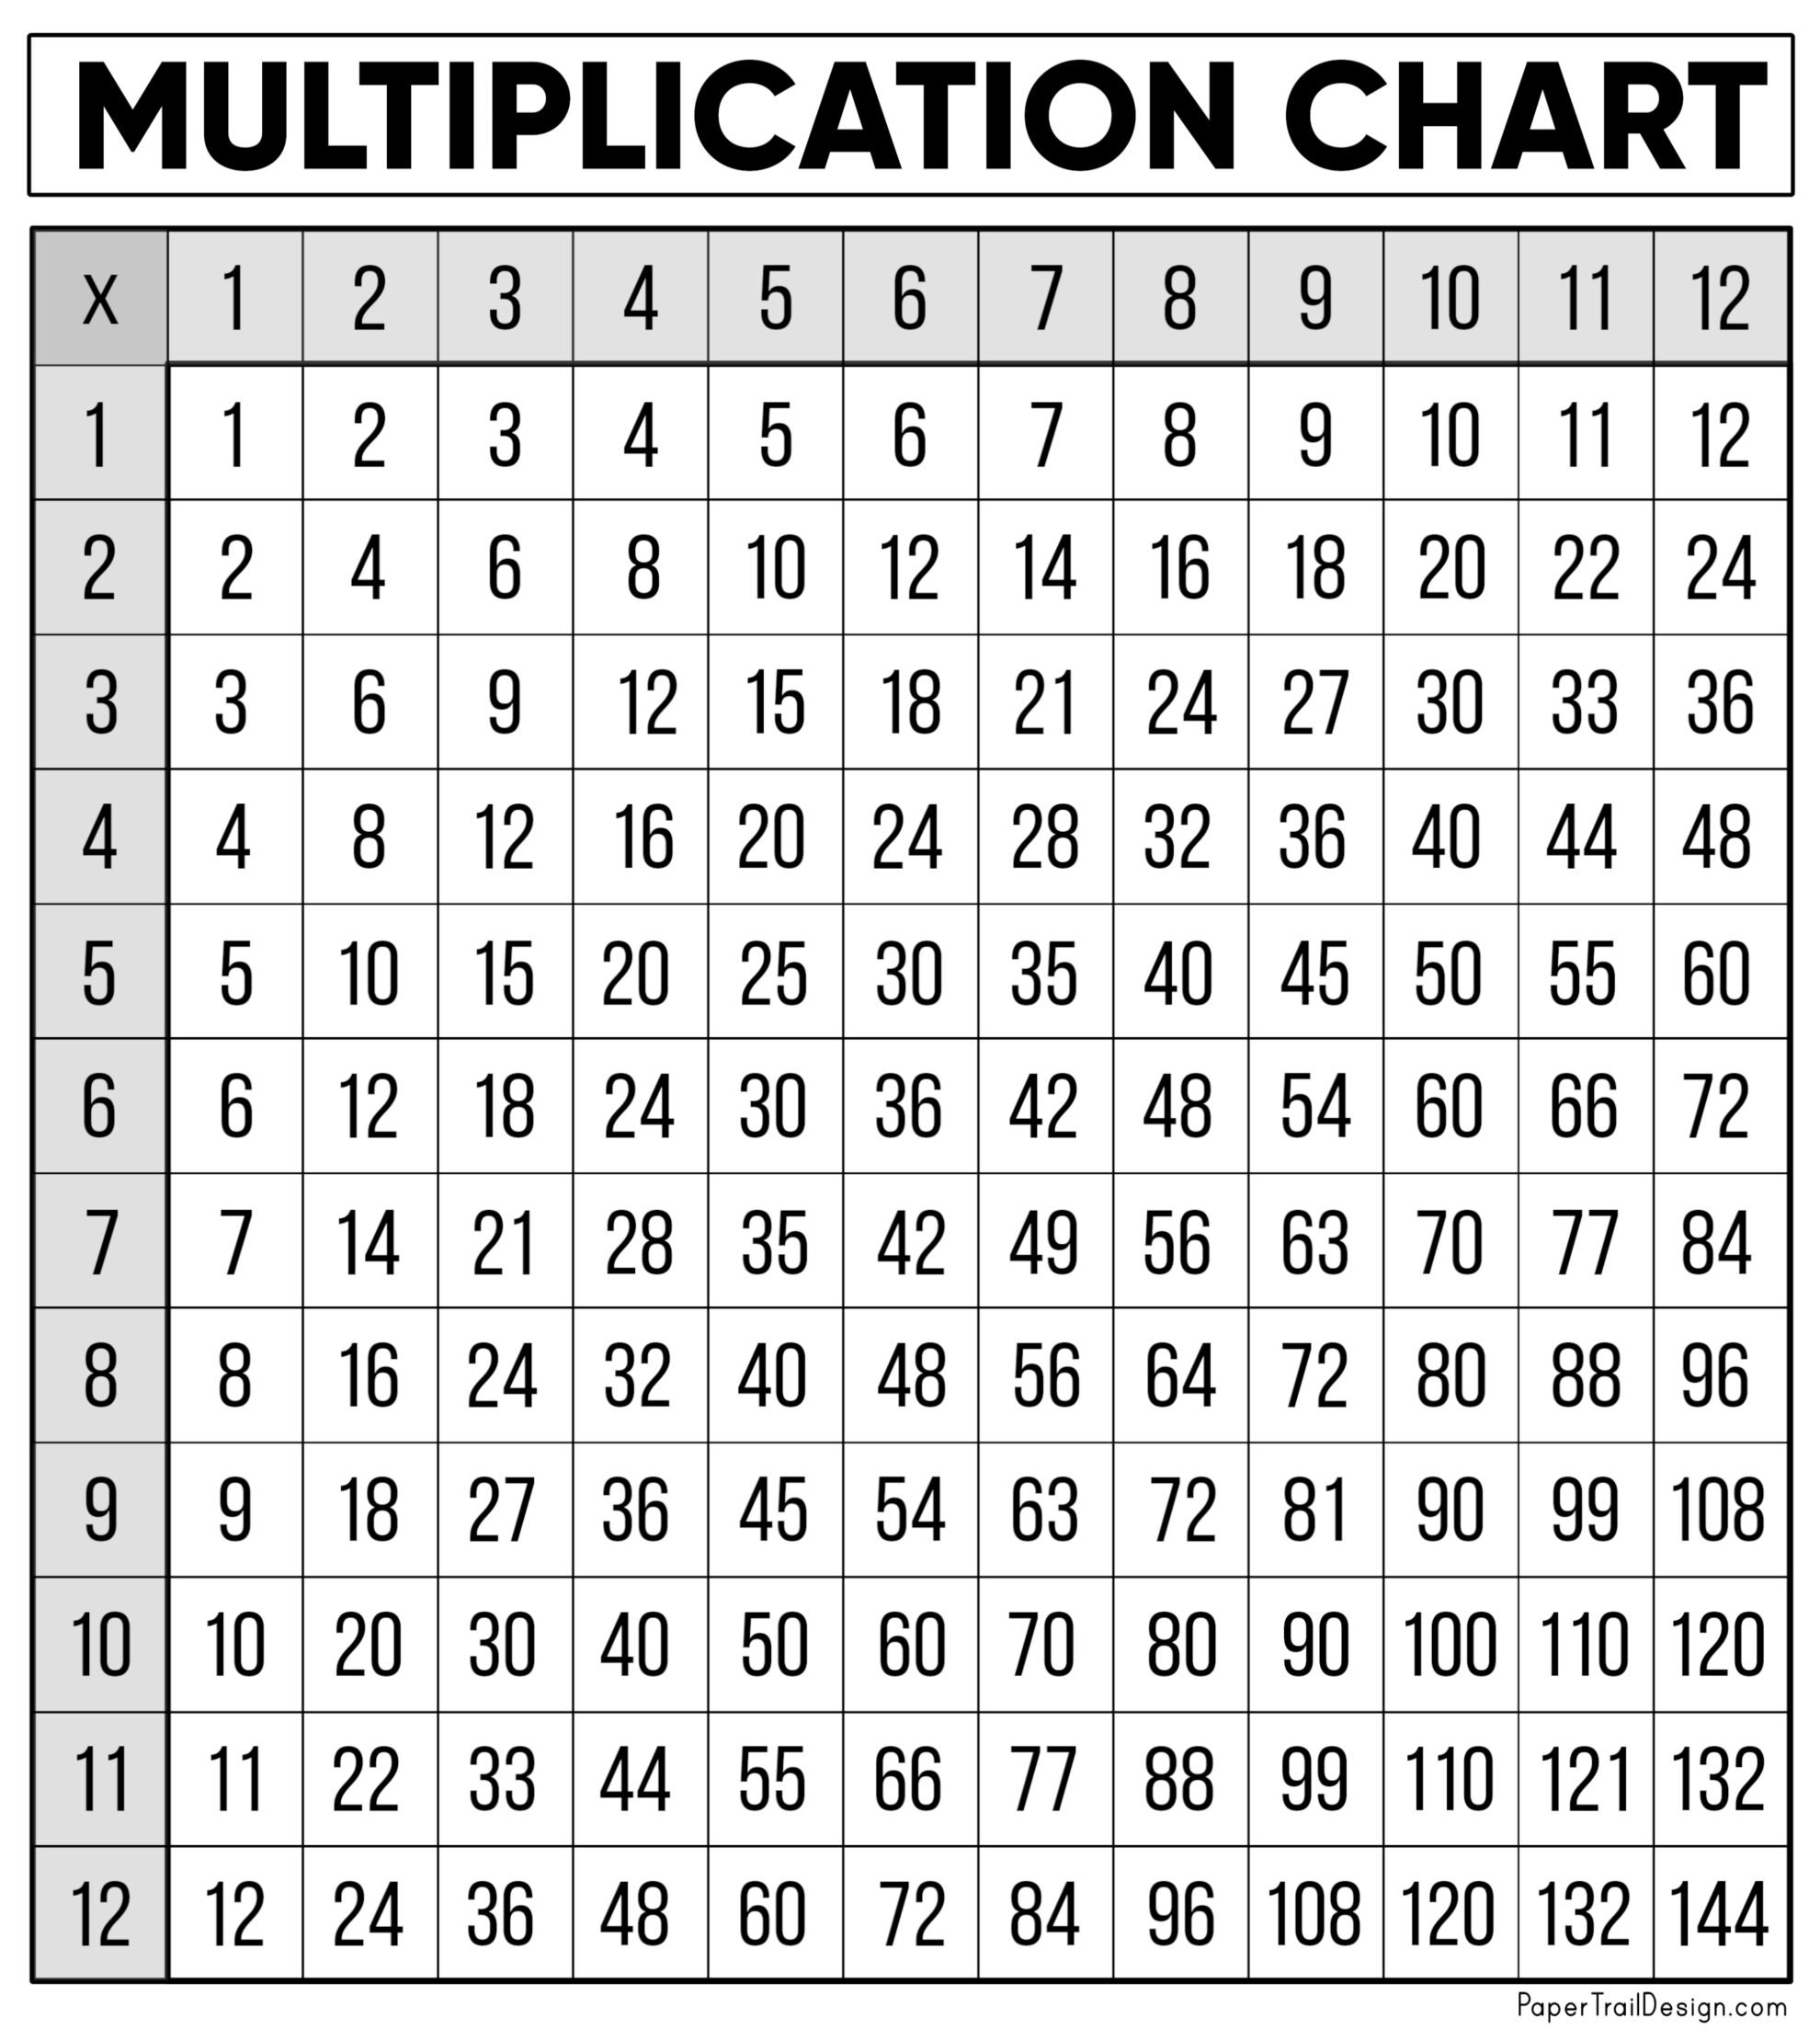 Multiplication Table To 12 / Multiplication Table 1 12 By Extra Special